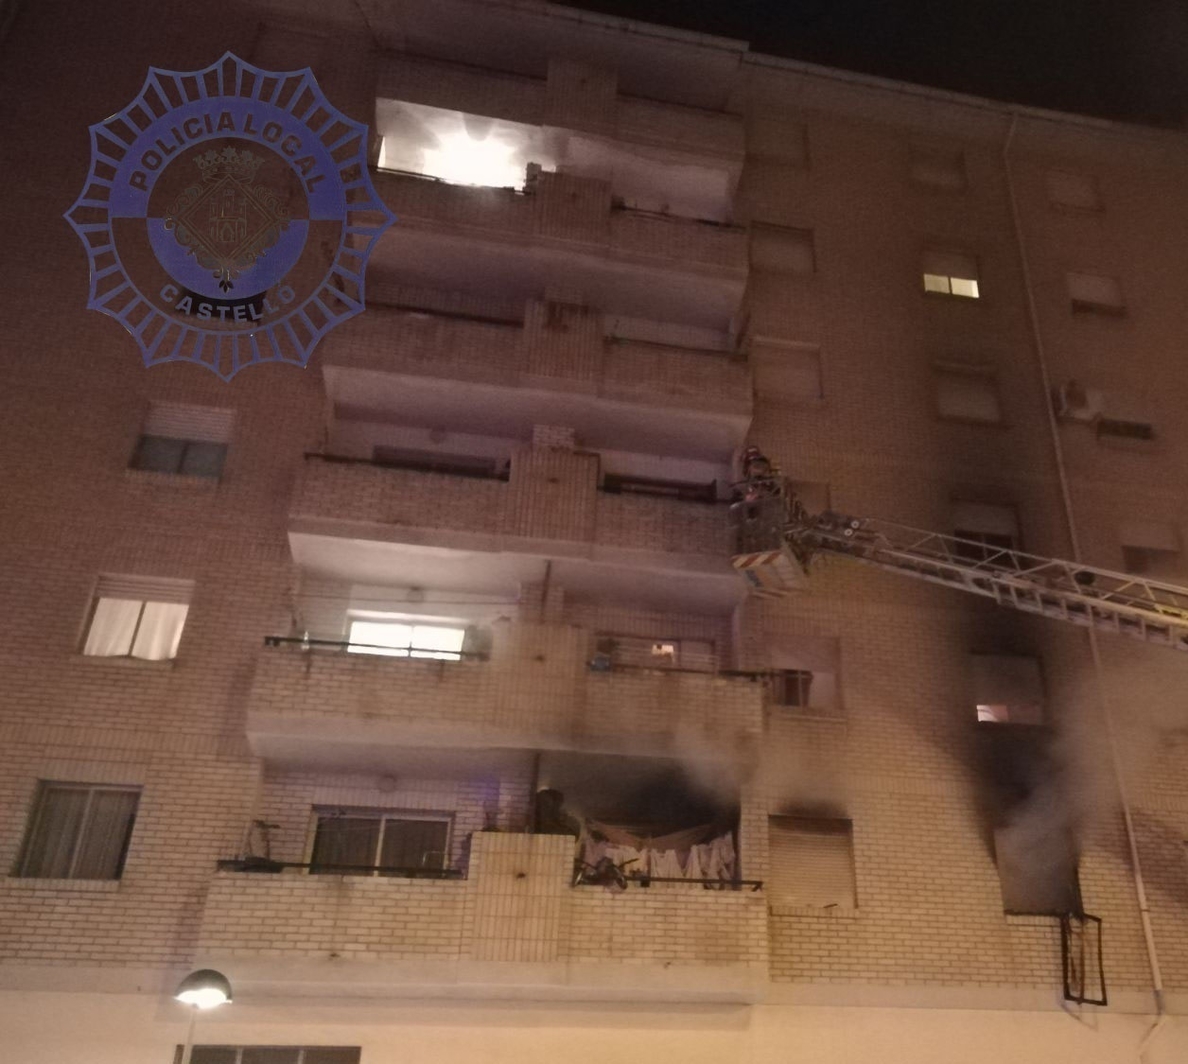 Bomberos localizan un cadáver en una vivienda de Castellón tras acudir a apagar el fuego en el piso colindante